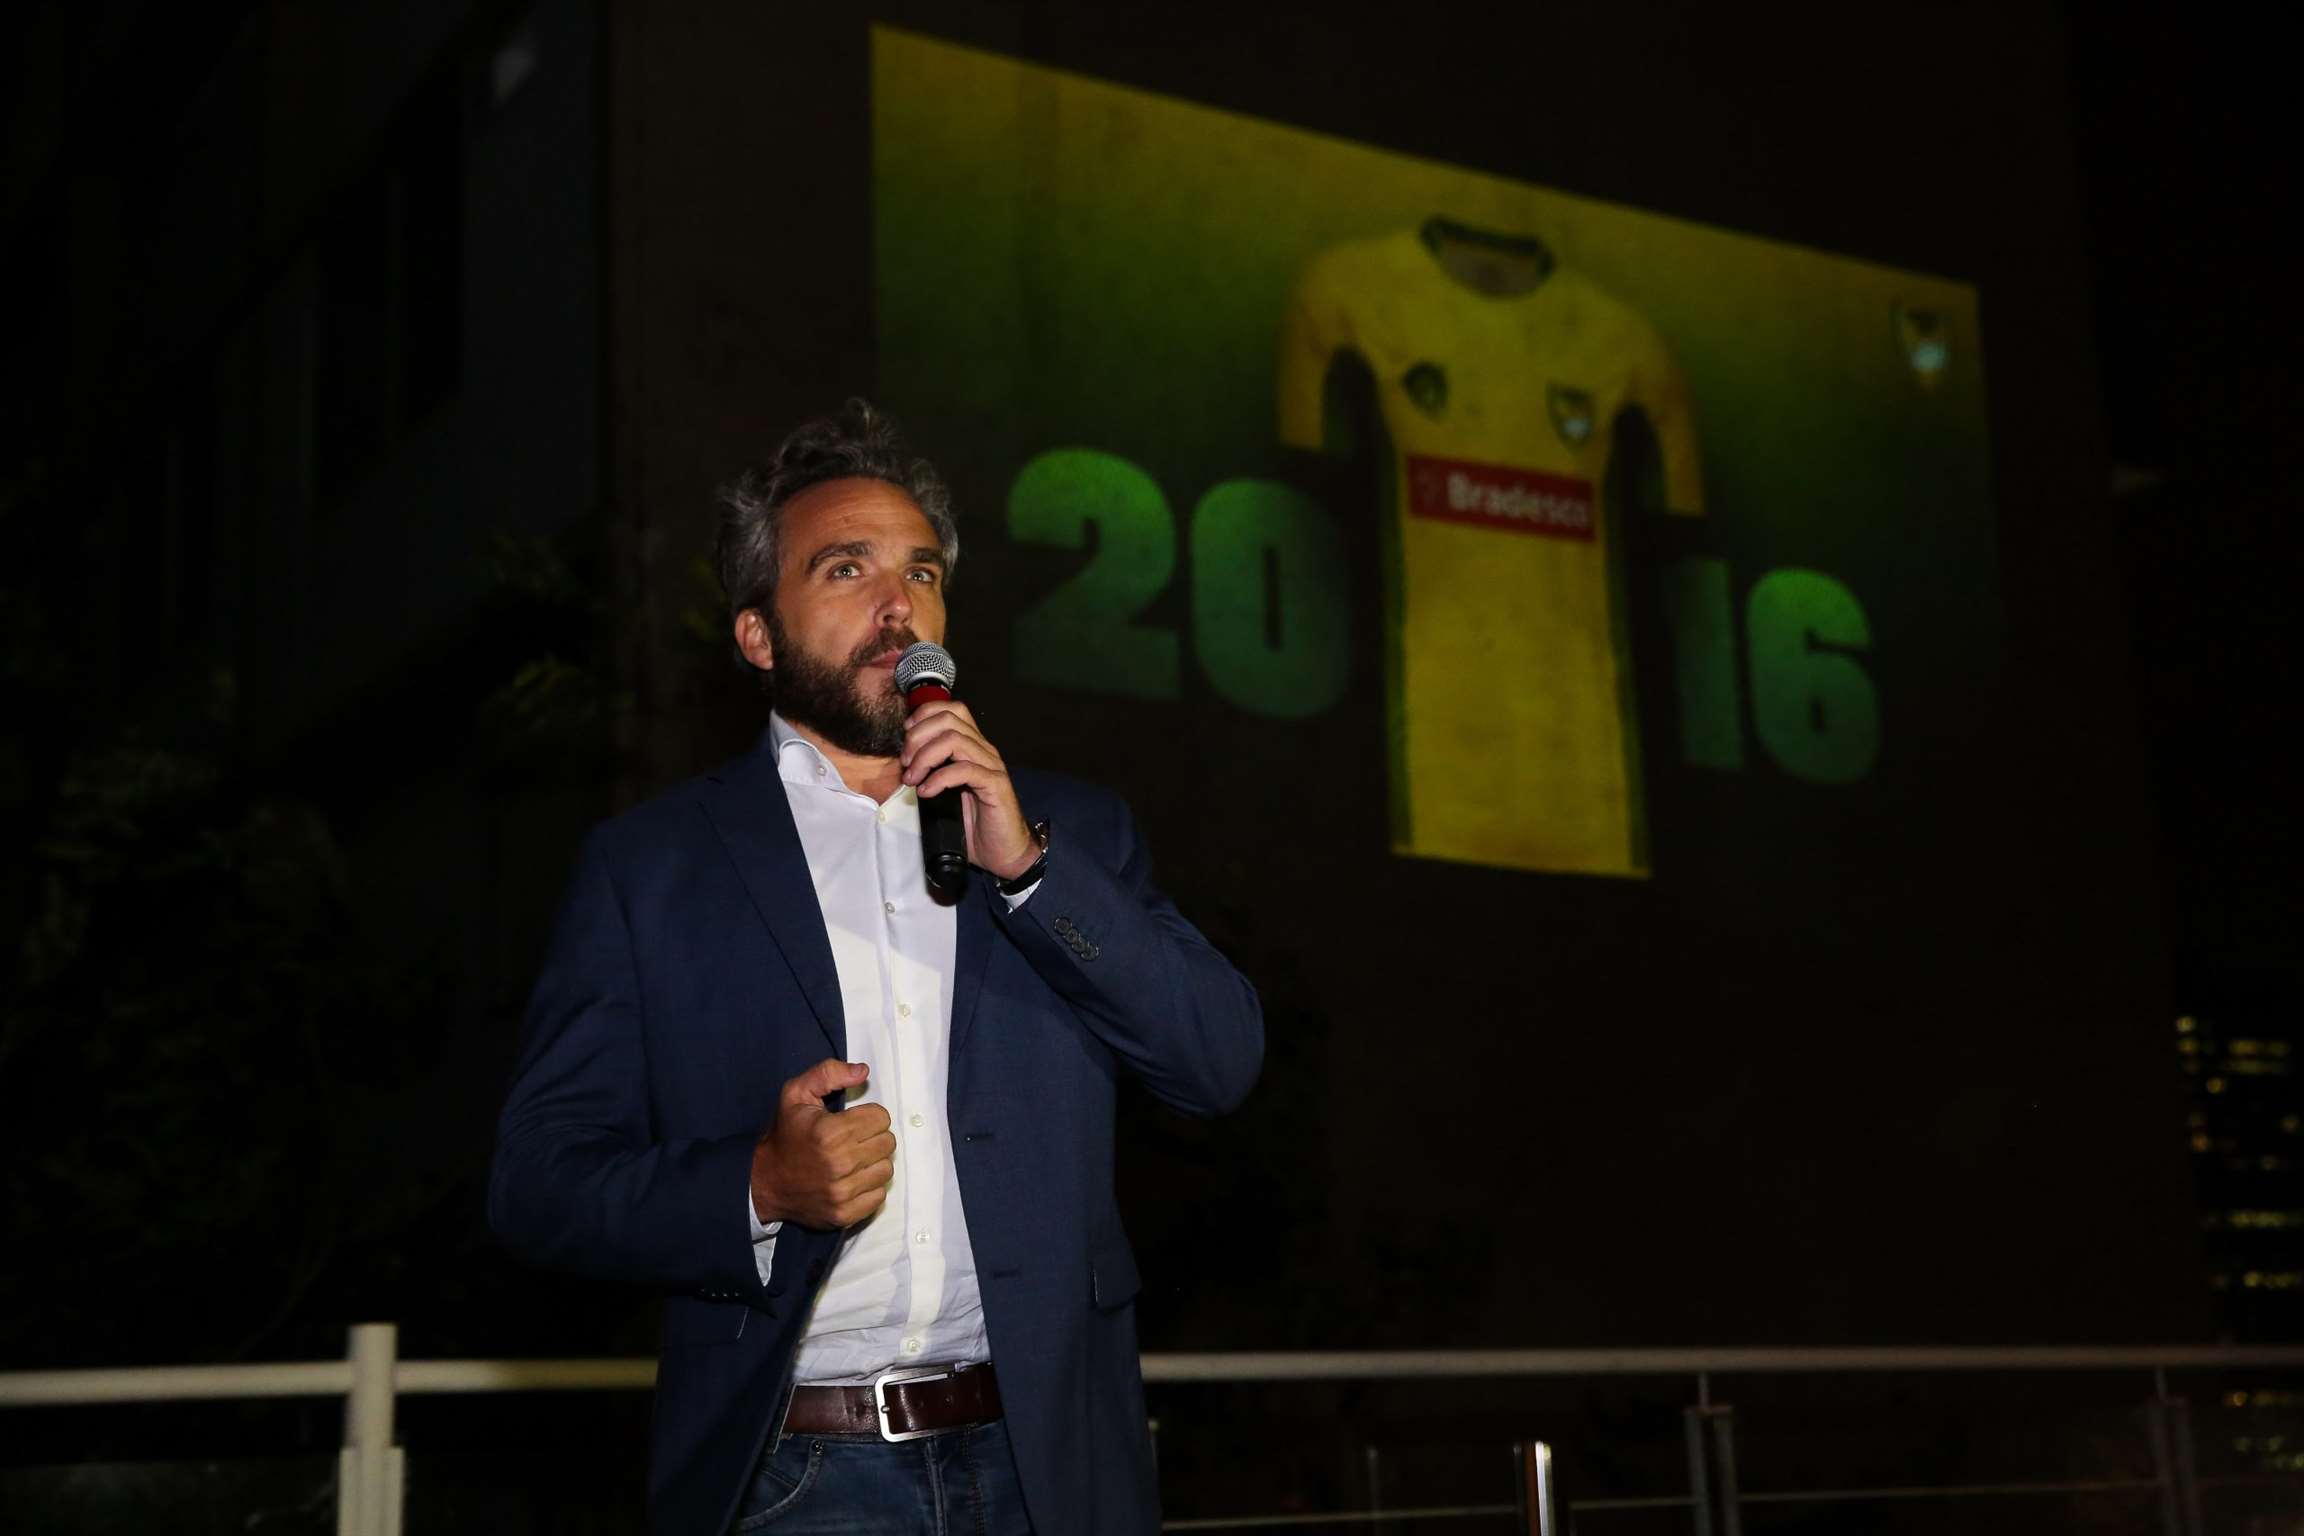 Seleção Brasileira de Rugby apresenta novos uniformes e patrocinadores